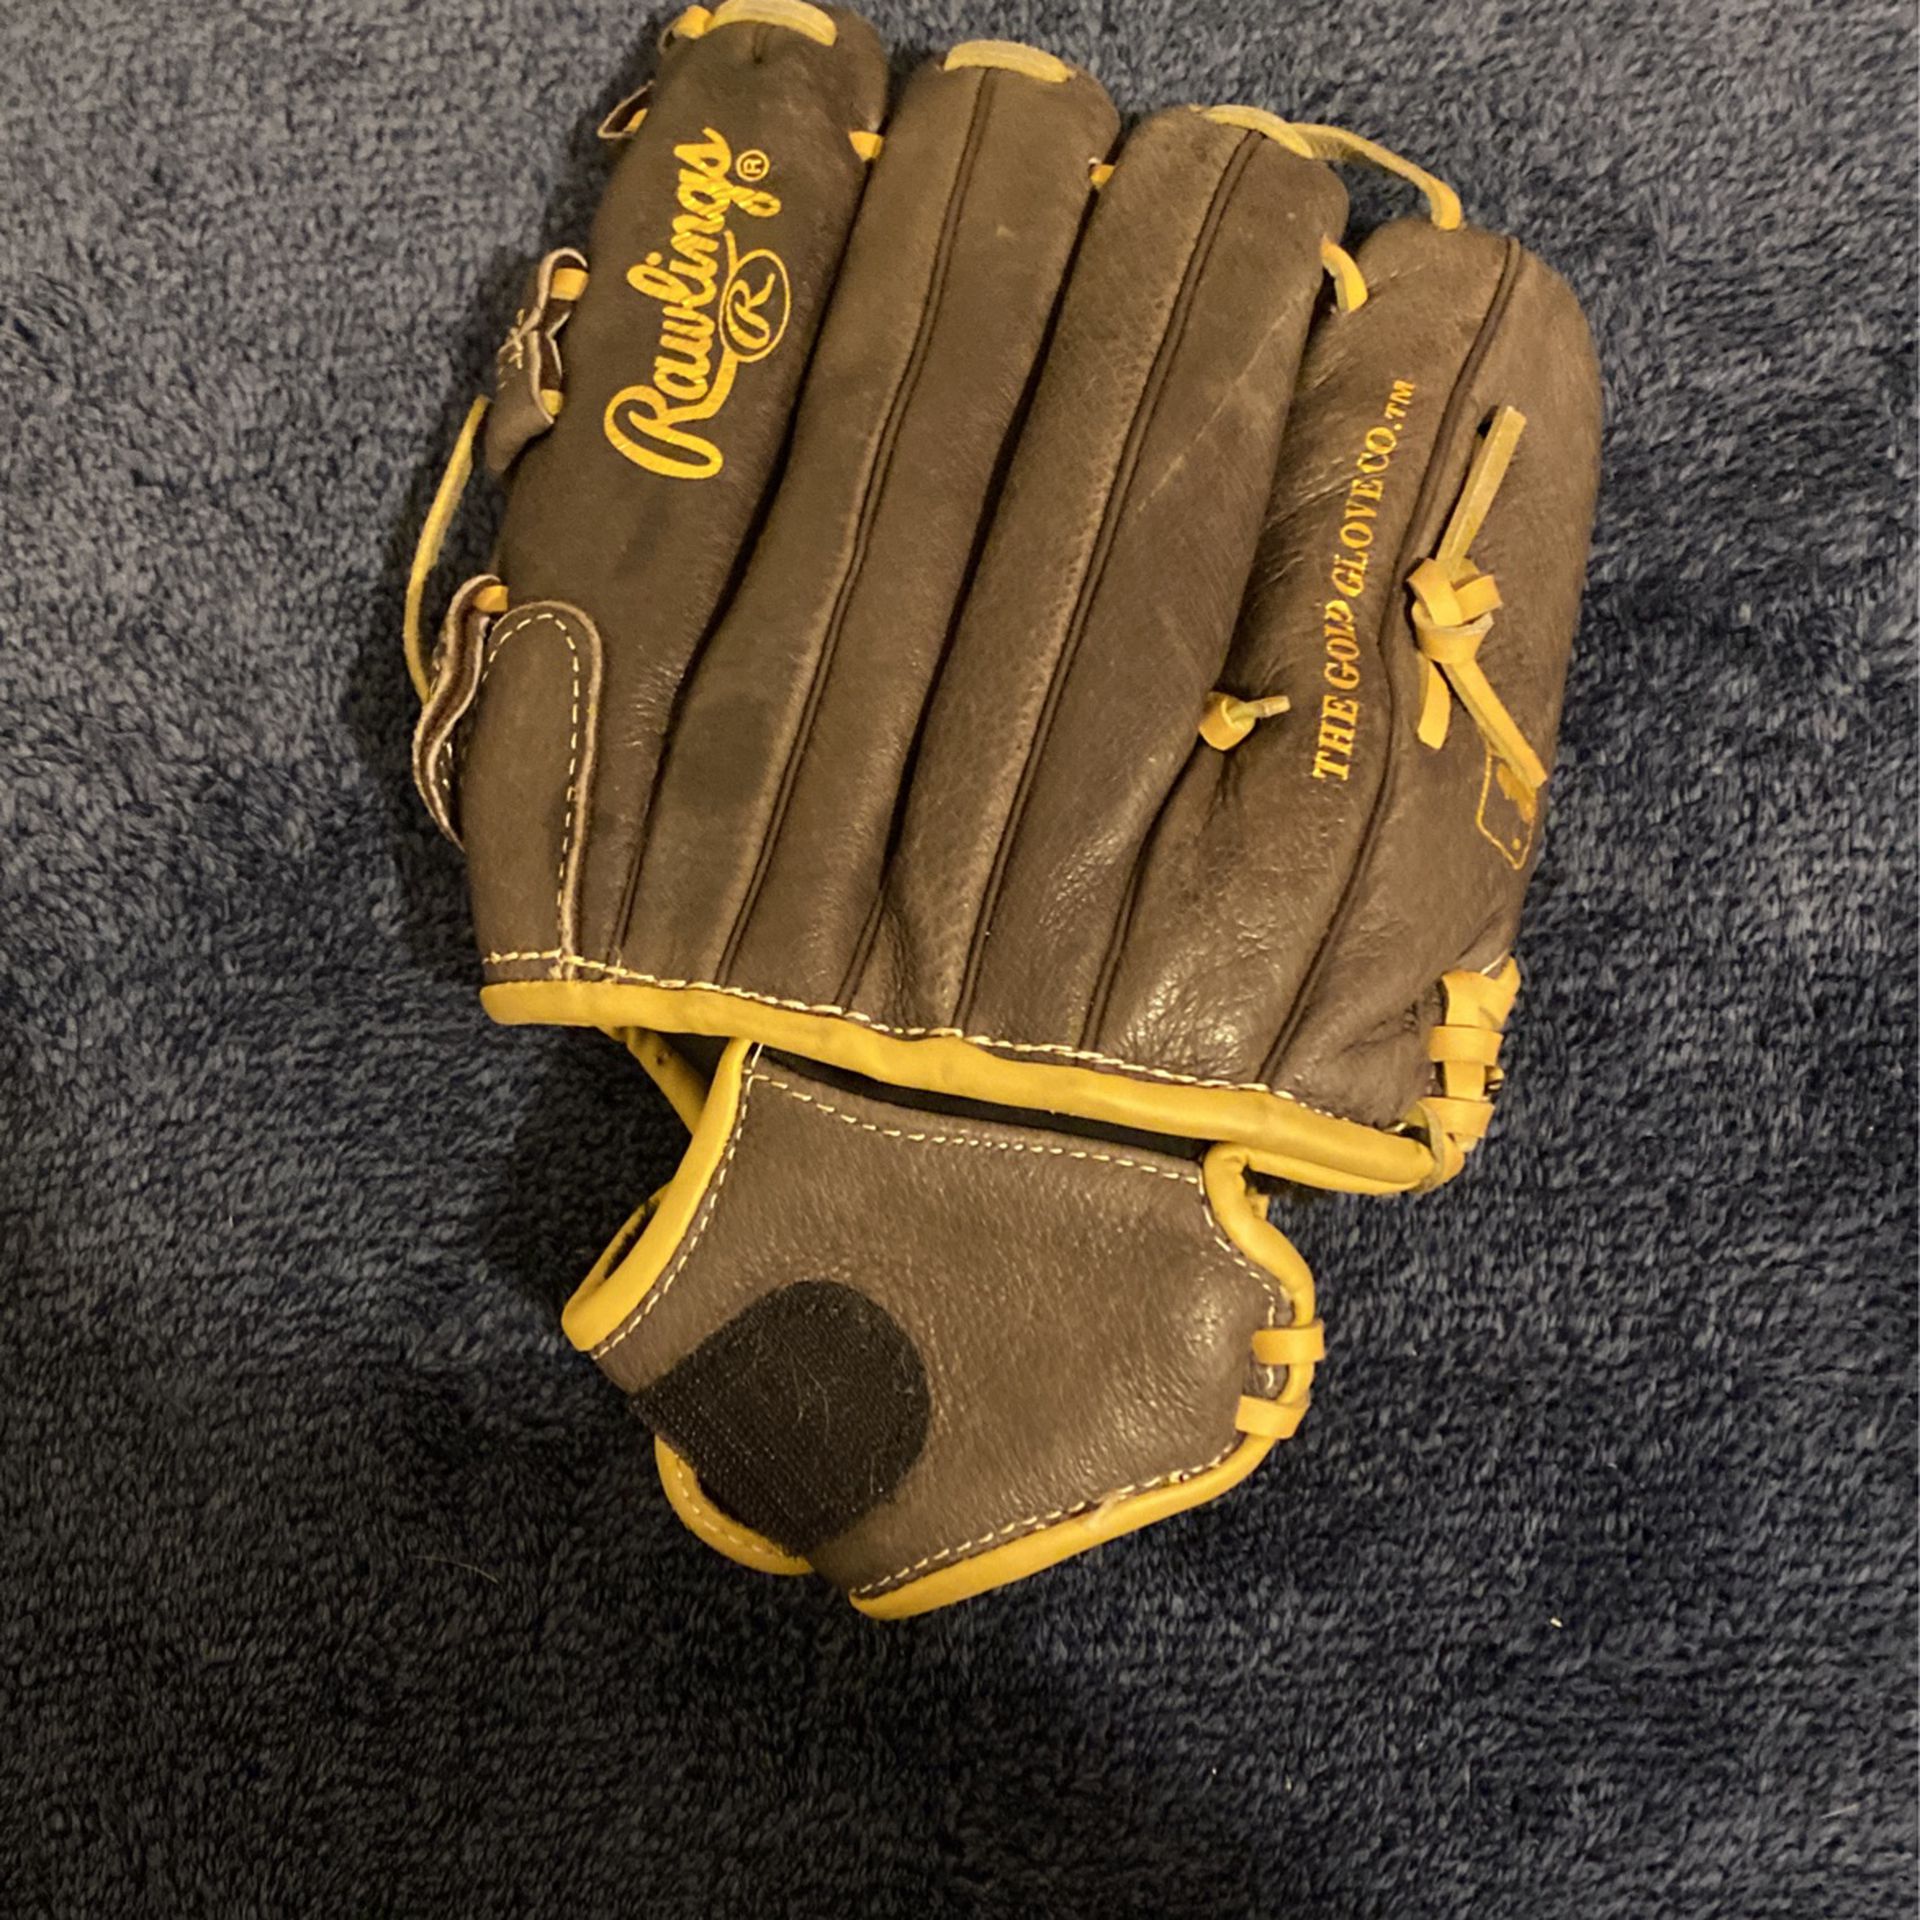 baseball glove 